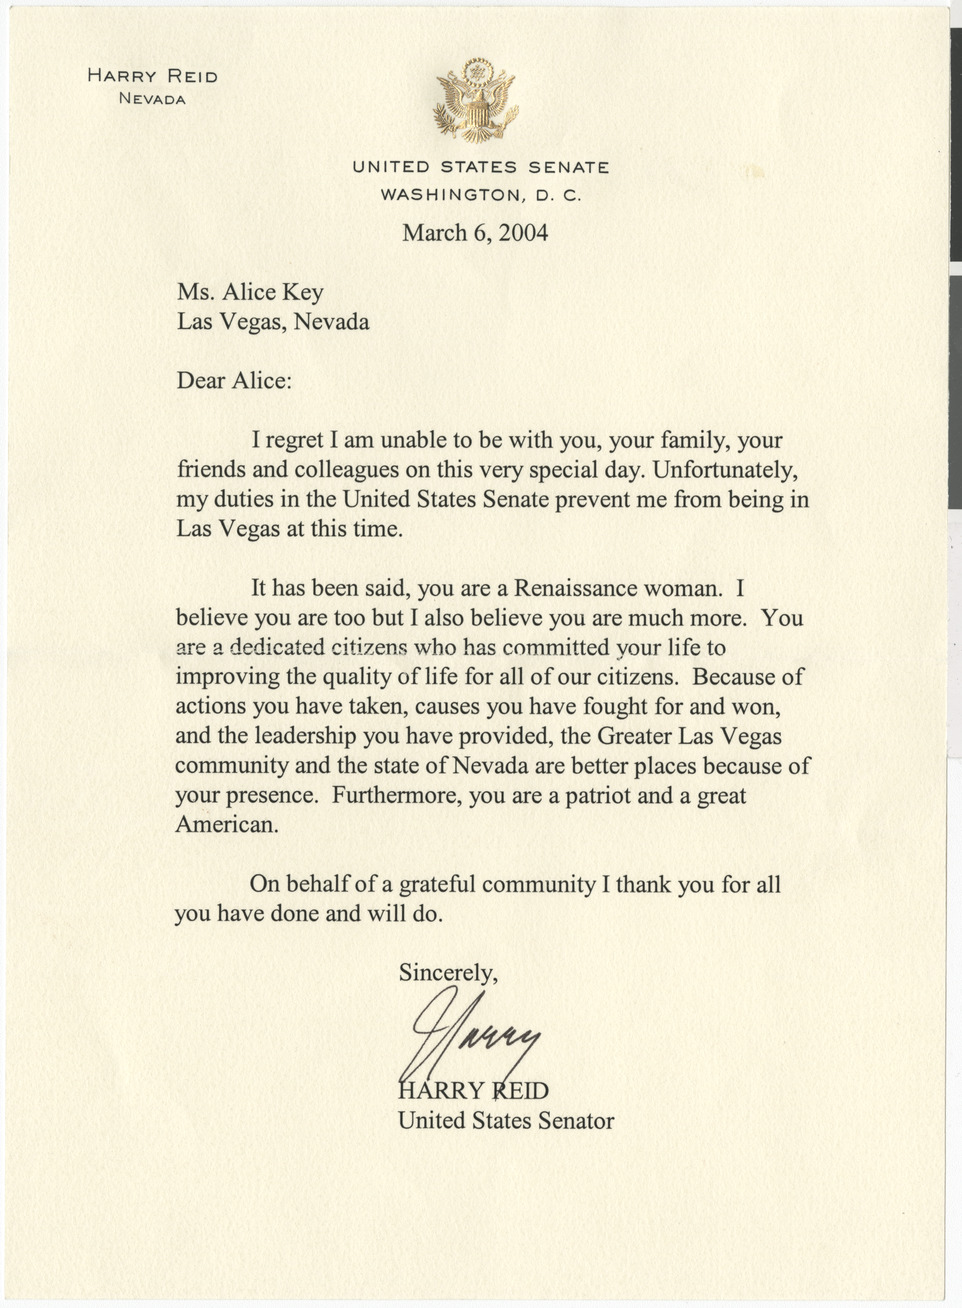 Letter from Senator Harry Reid to Alice Key, March 6, 2004